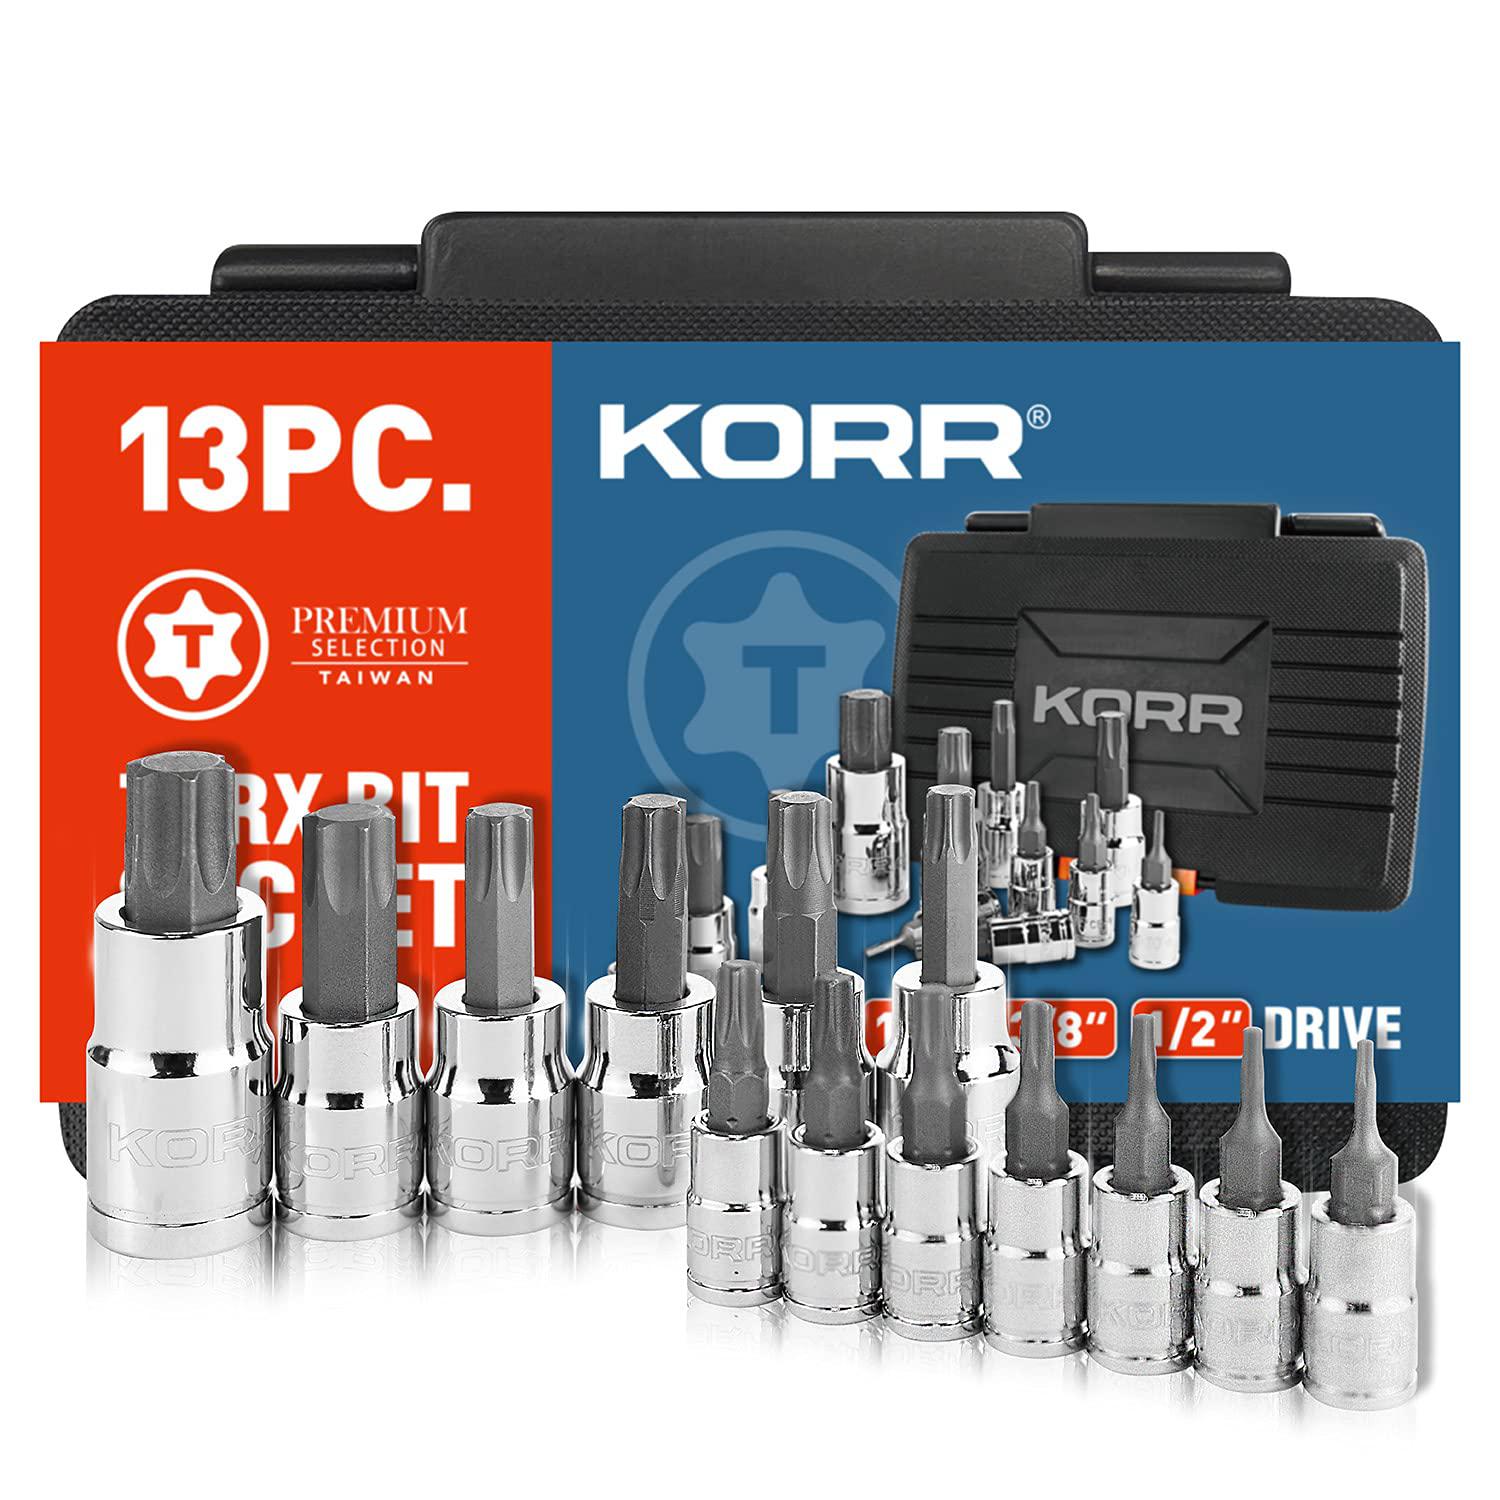 korr tools kss004 13pc torx bit socket set, sizes from t8 - t60 | 1/4-inch, 3/8-inch & 1/2-inch drive